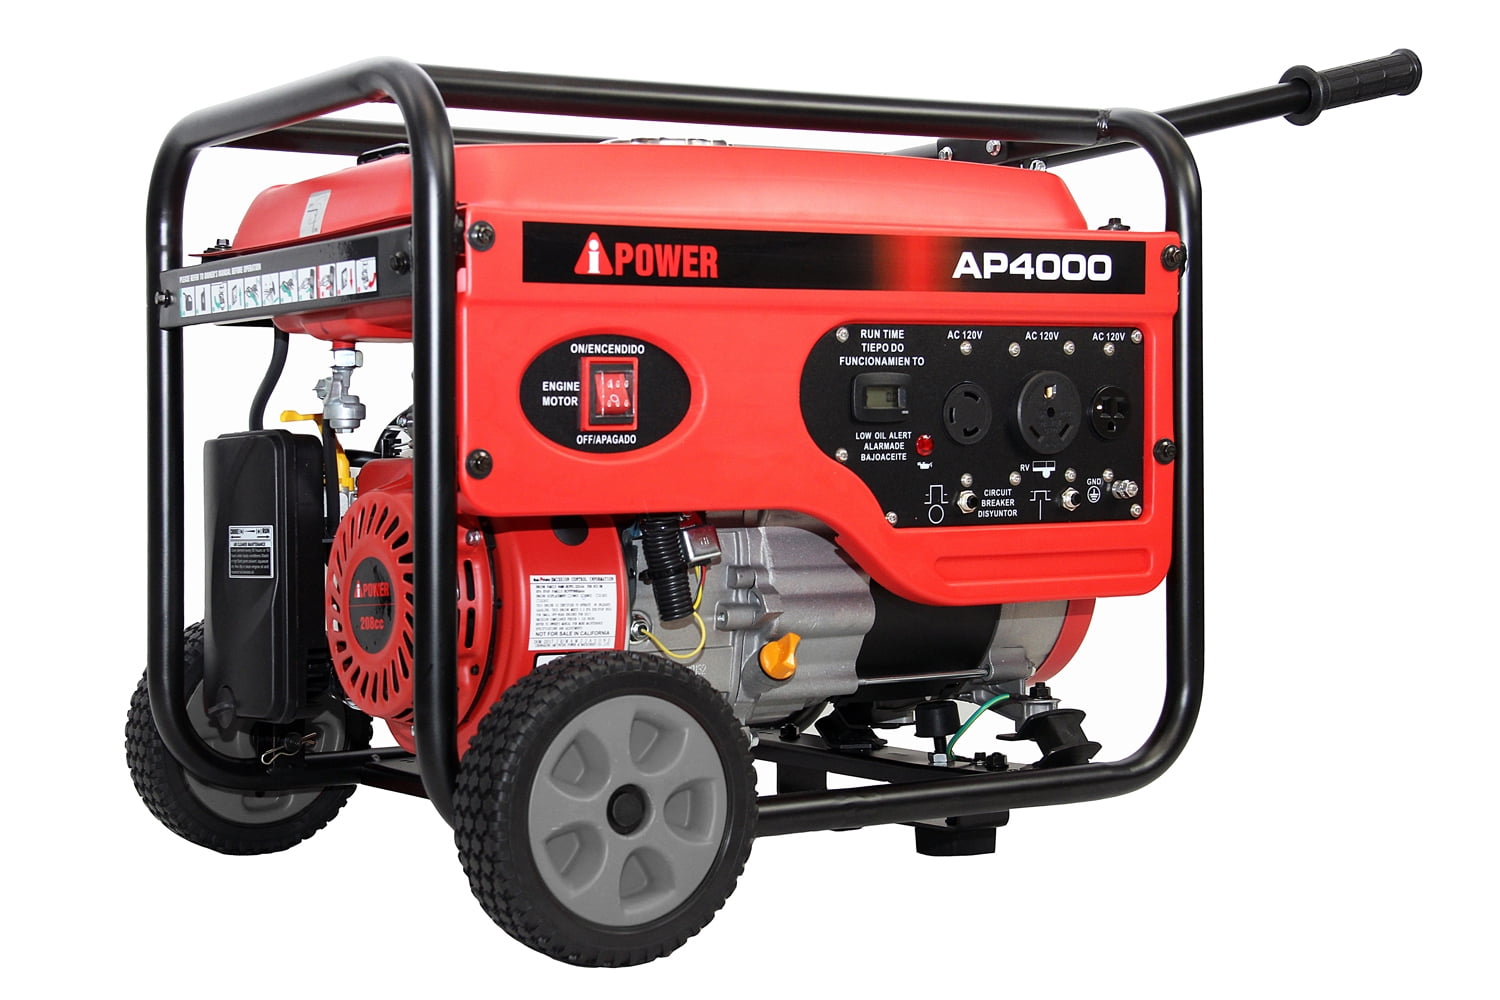 Ai Power 4000W Gasoline Generator With Wheel Kit